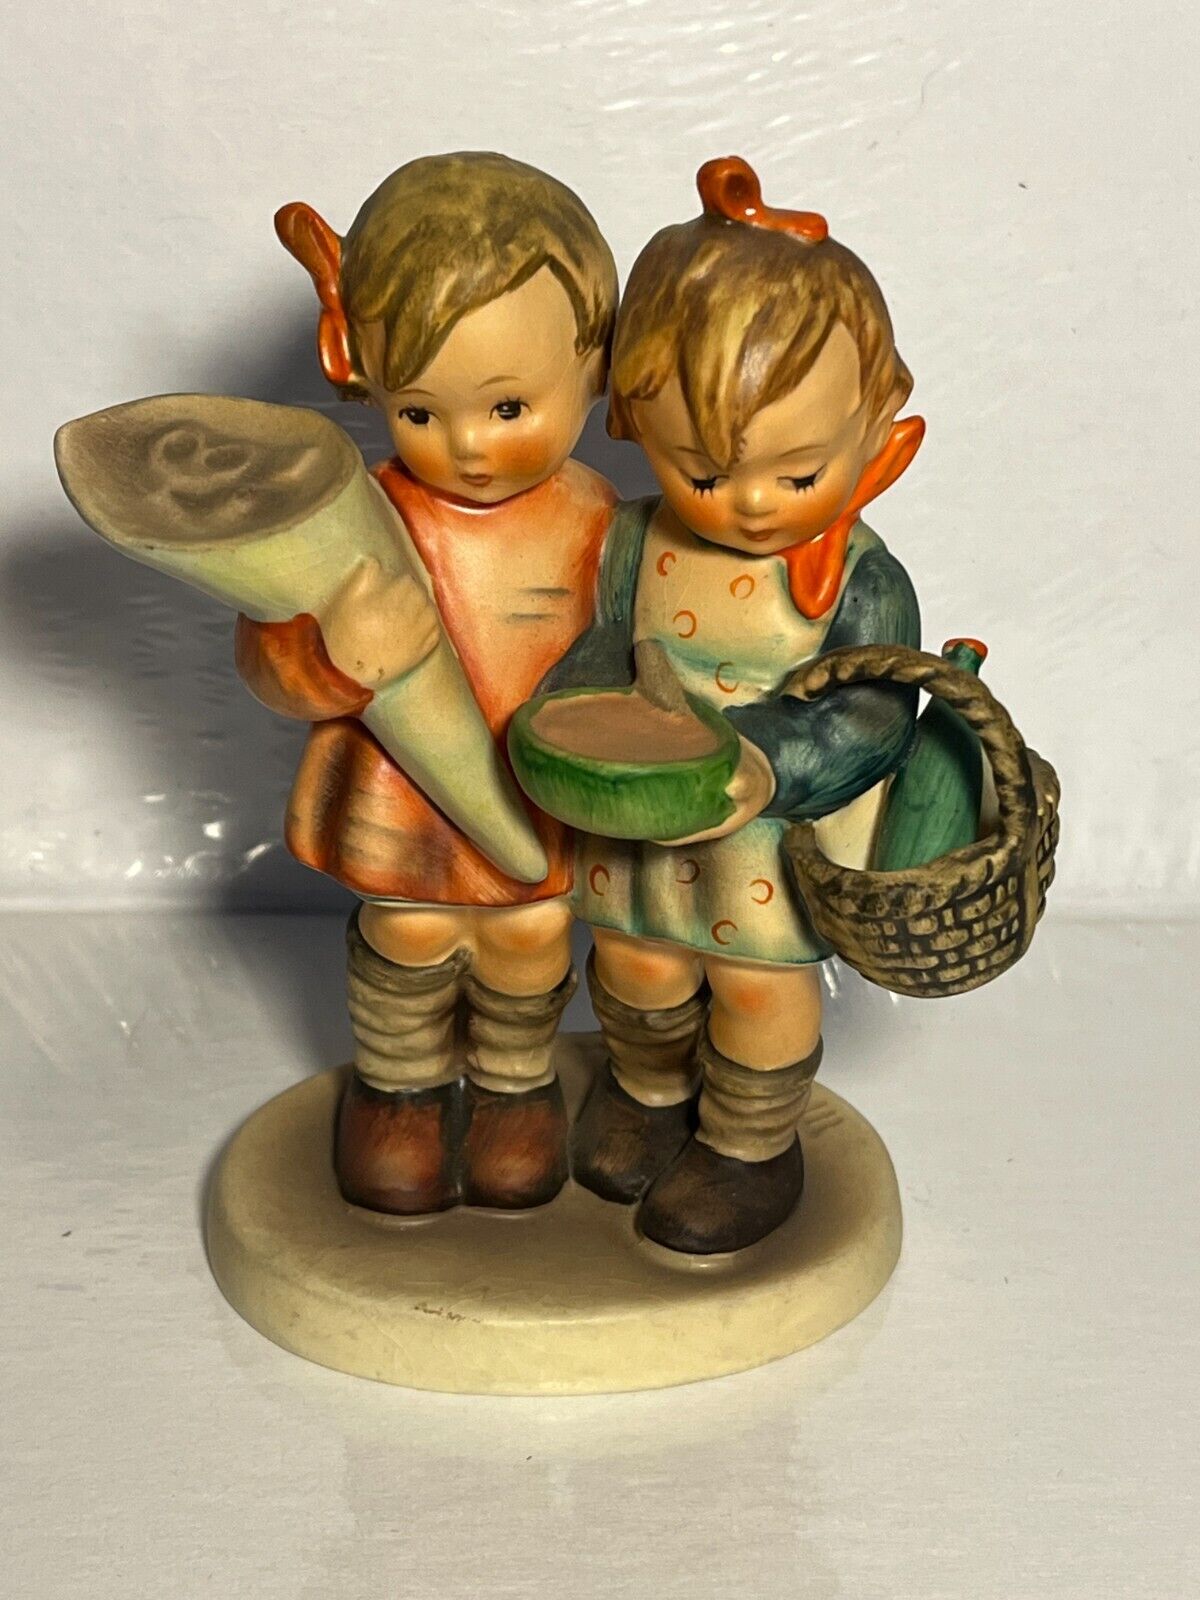 VINTAGE Goebel Hummel Figurine Boy & Girl "Going to Grandmas" 52/0 - 4.75"